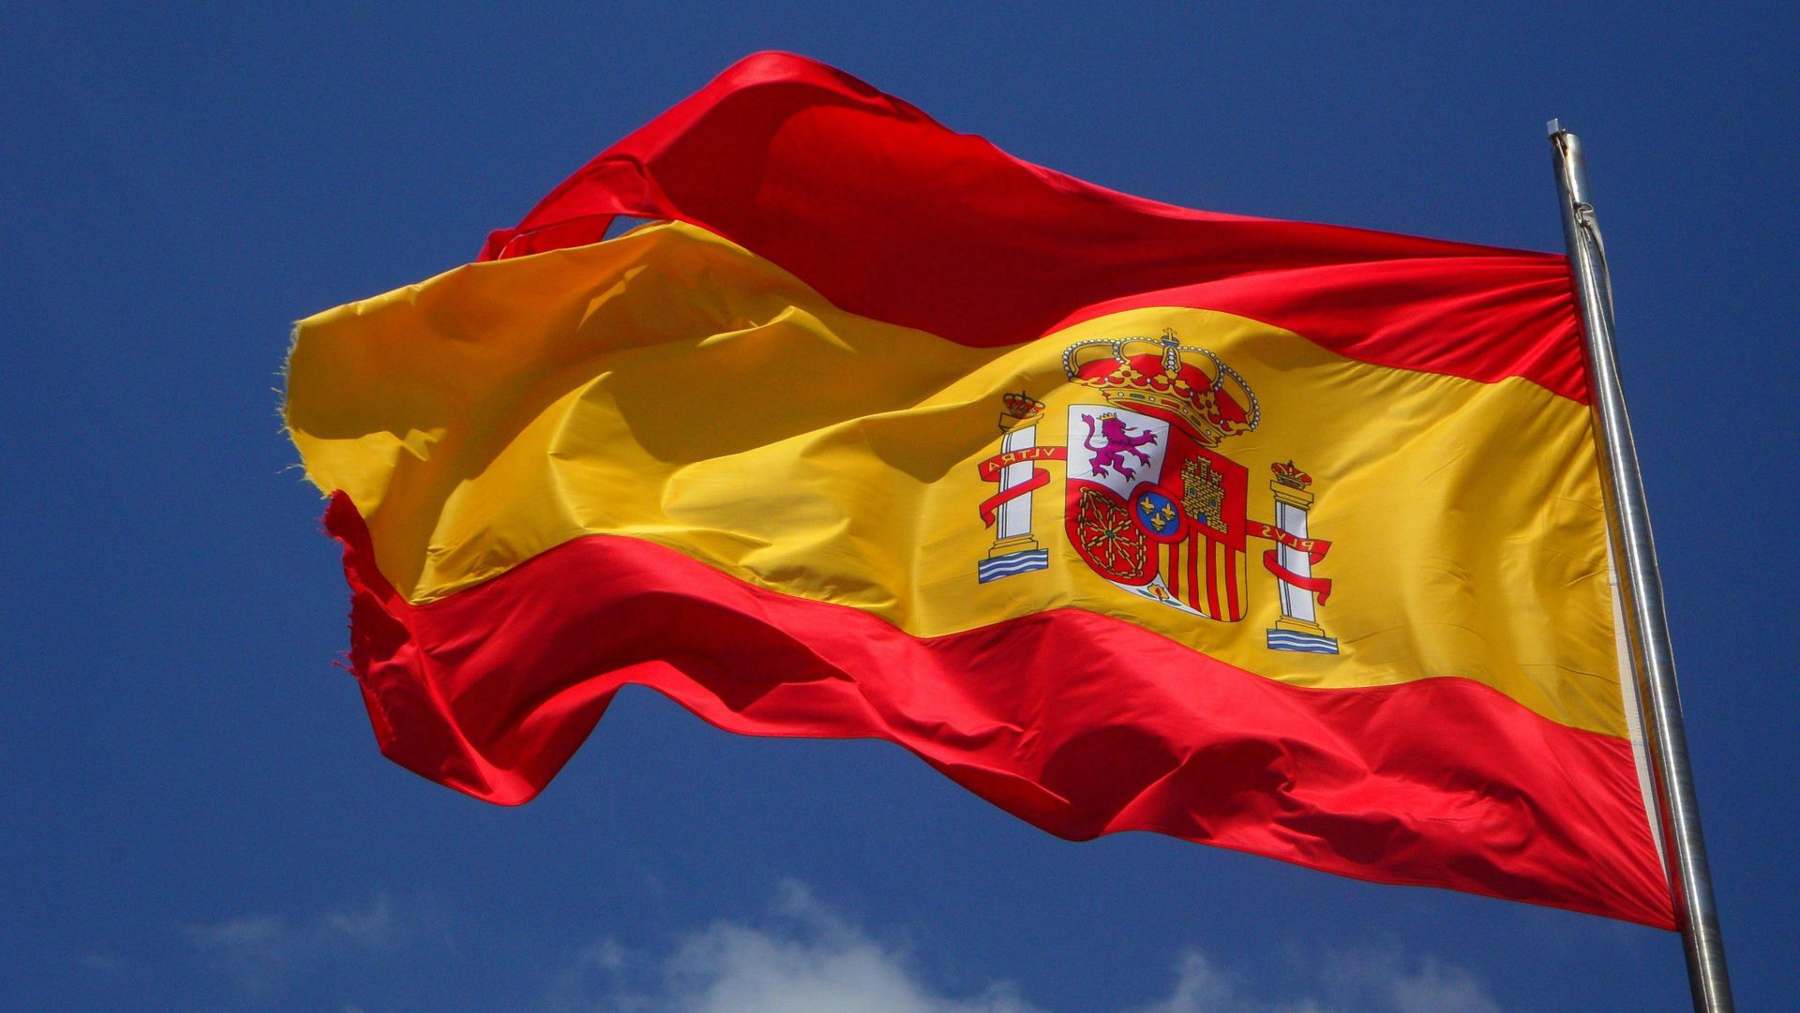 La bandera de España